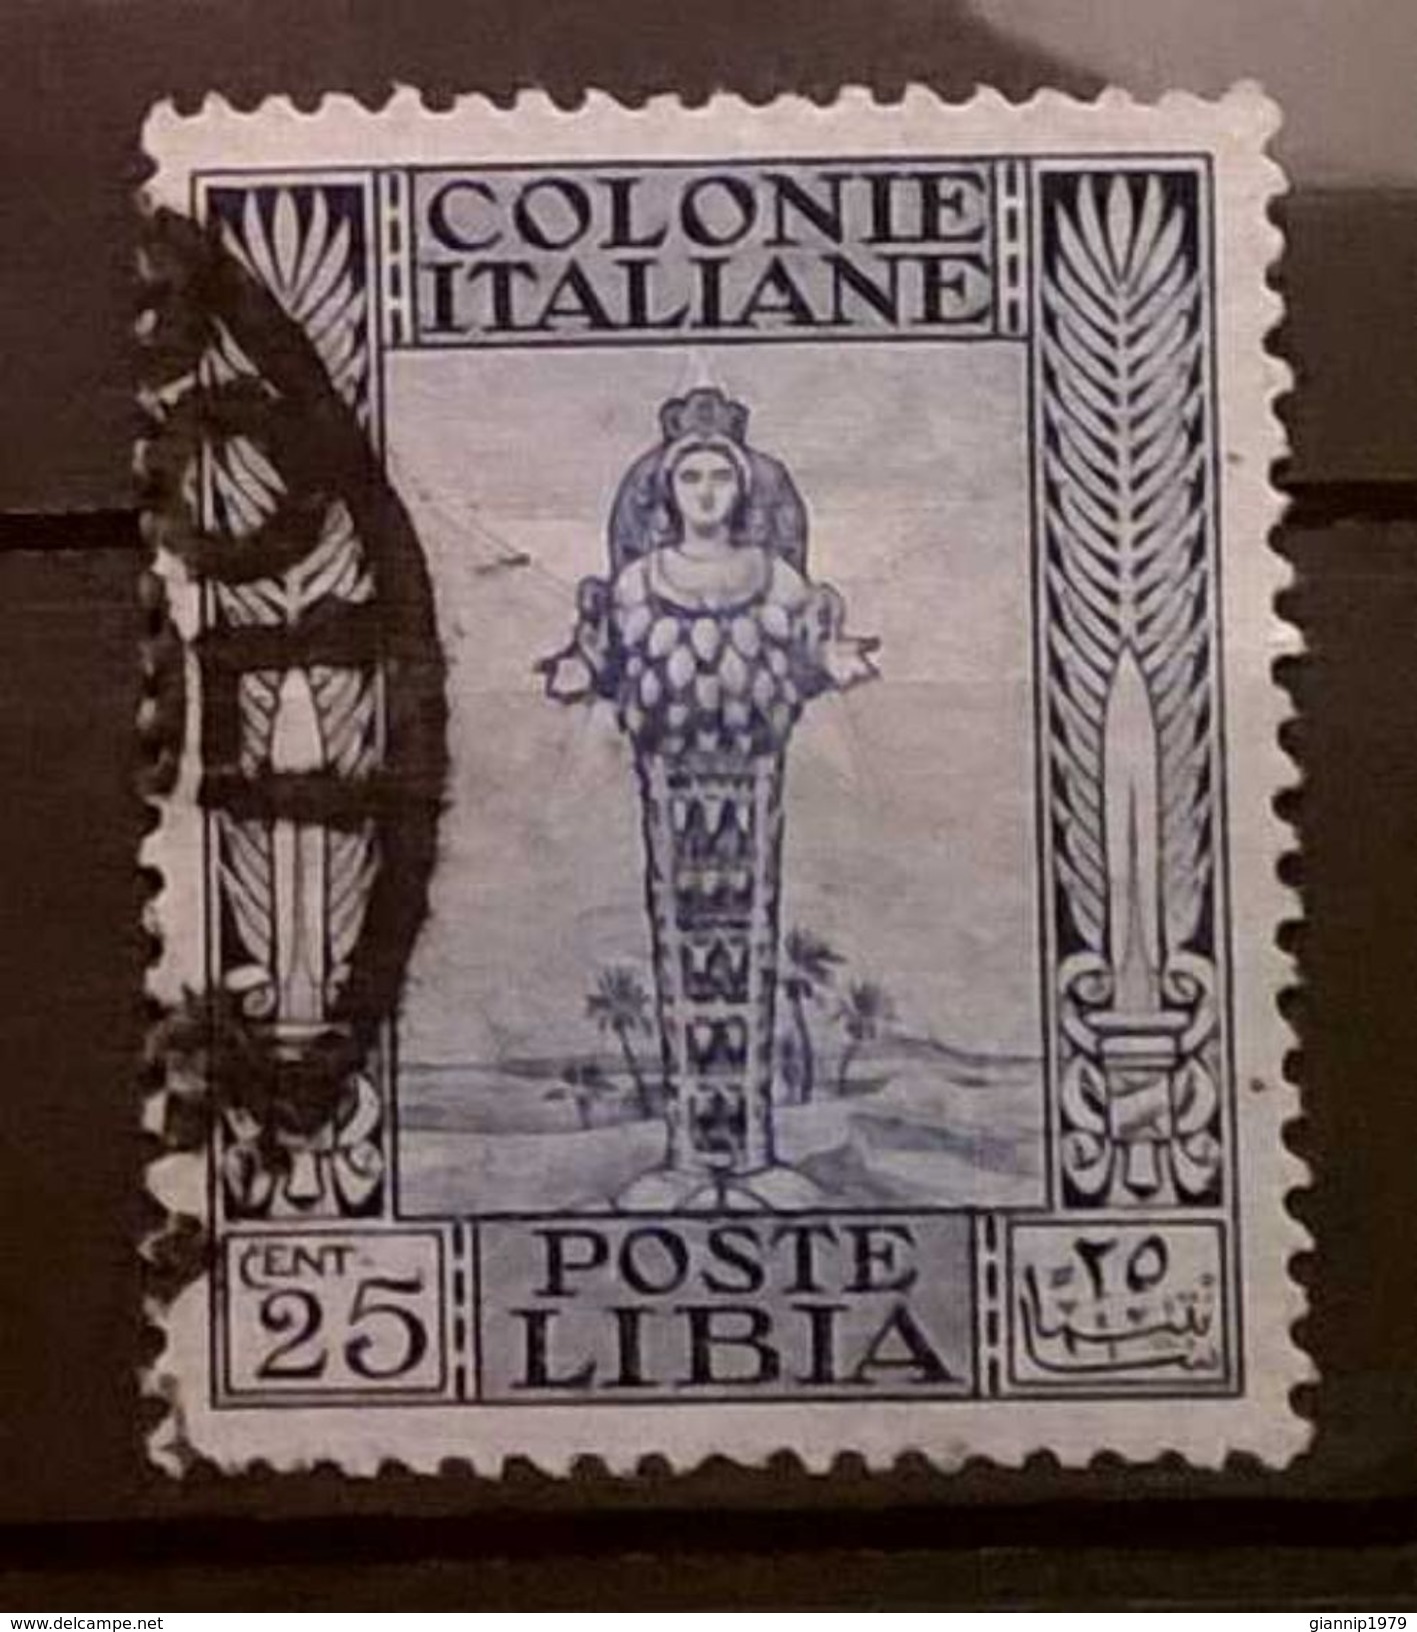 FRANCOBOLLI STAMPS ITALIA ITALY 1921 COLONIA LIBIA SERIE ANTICHE - Libya